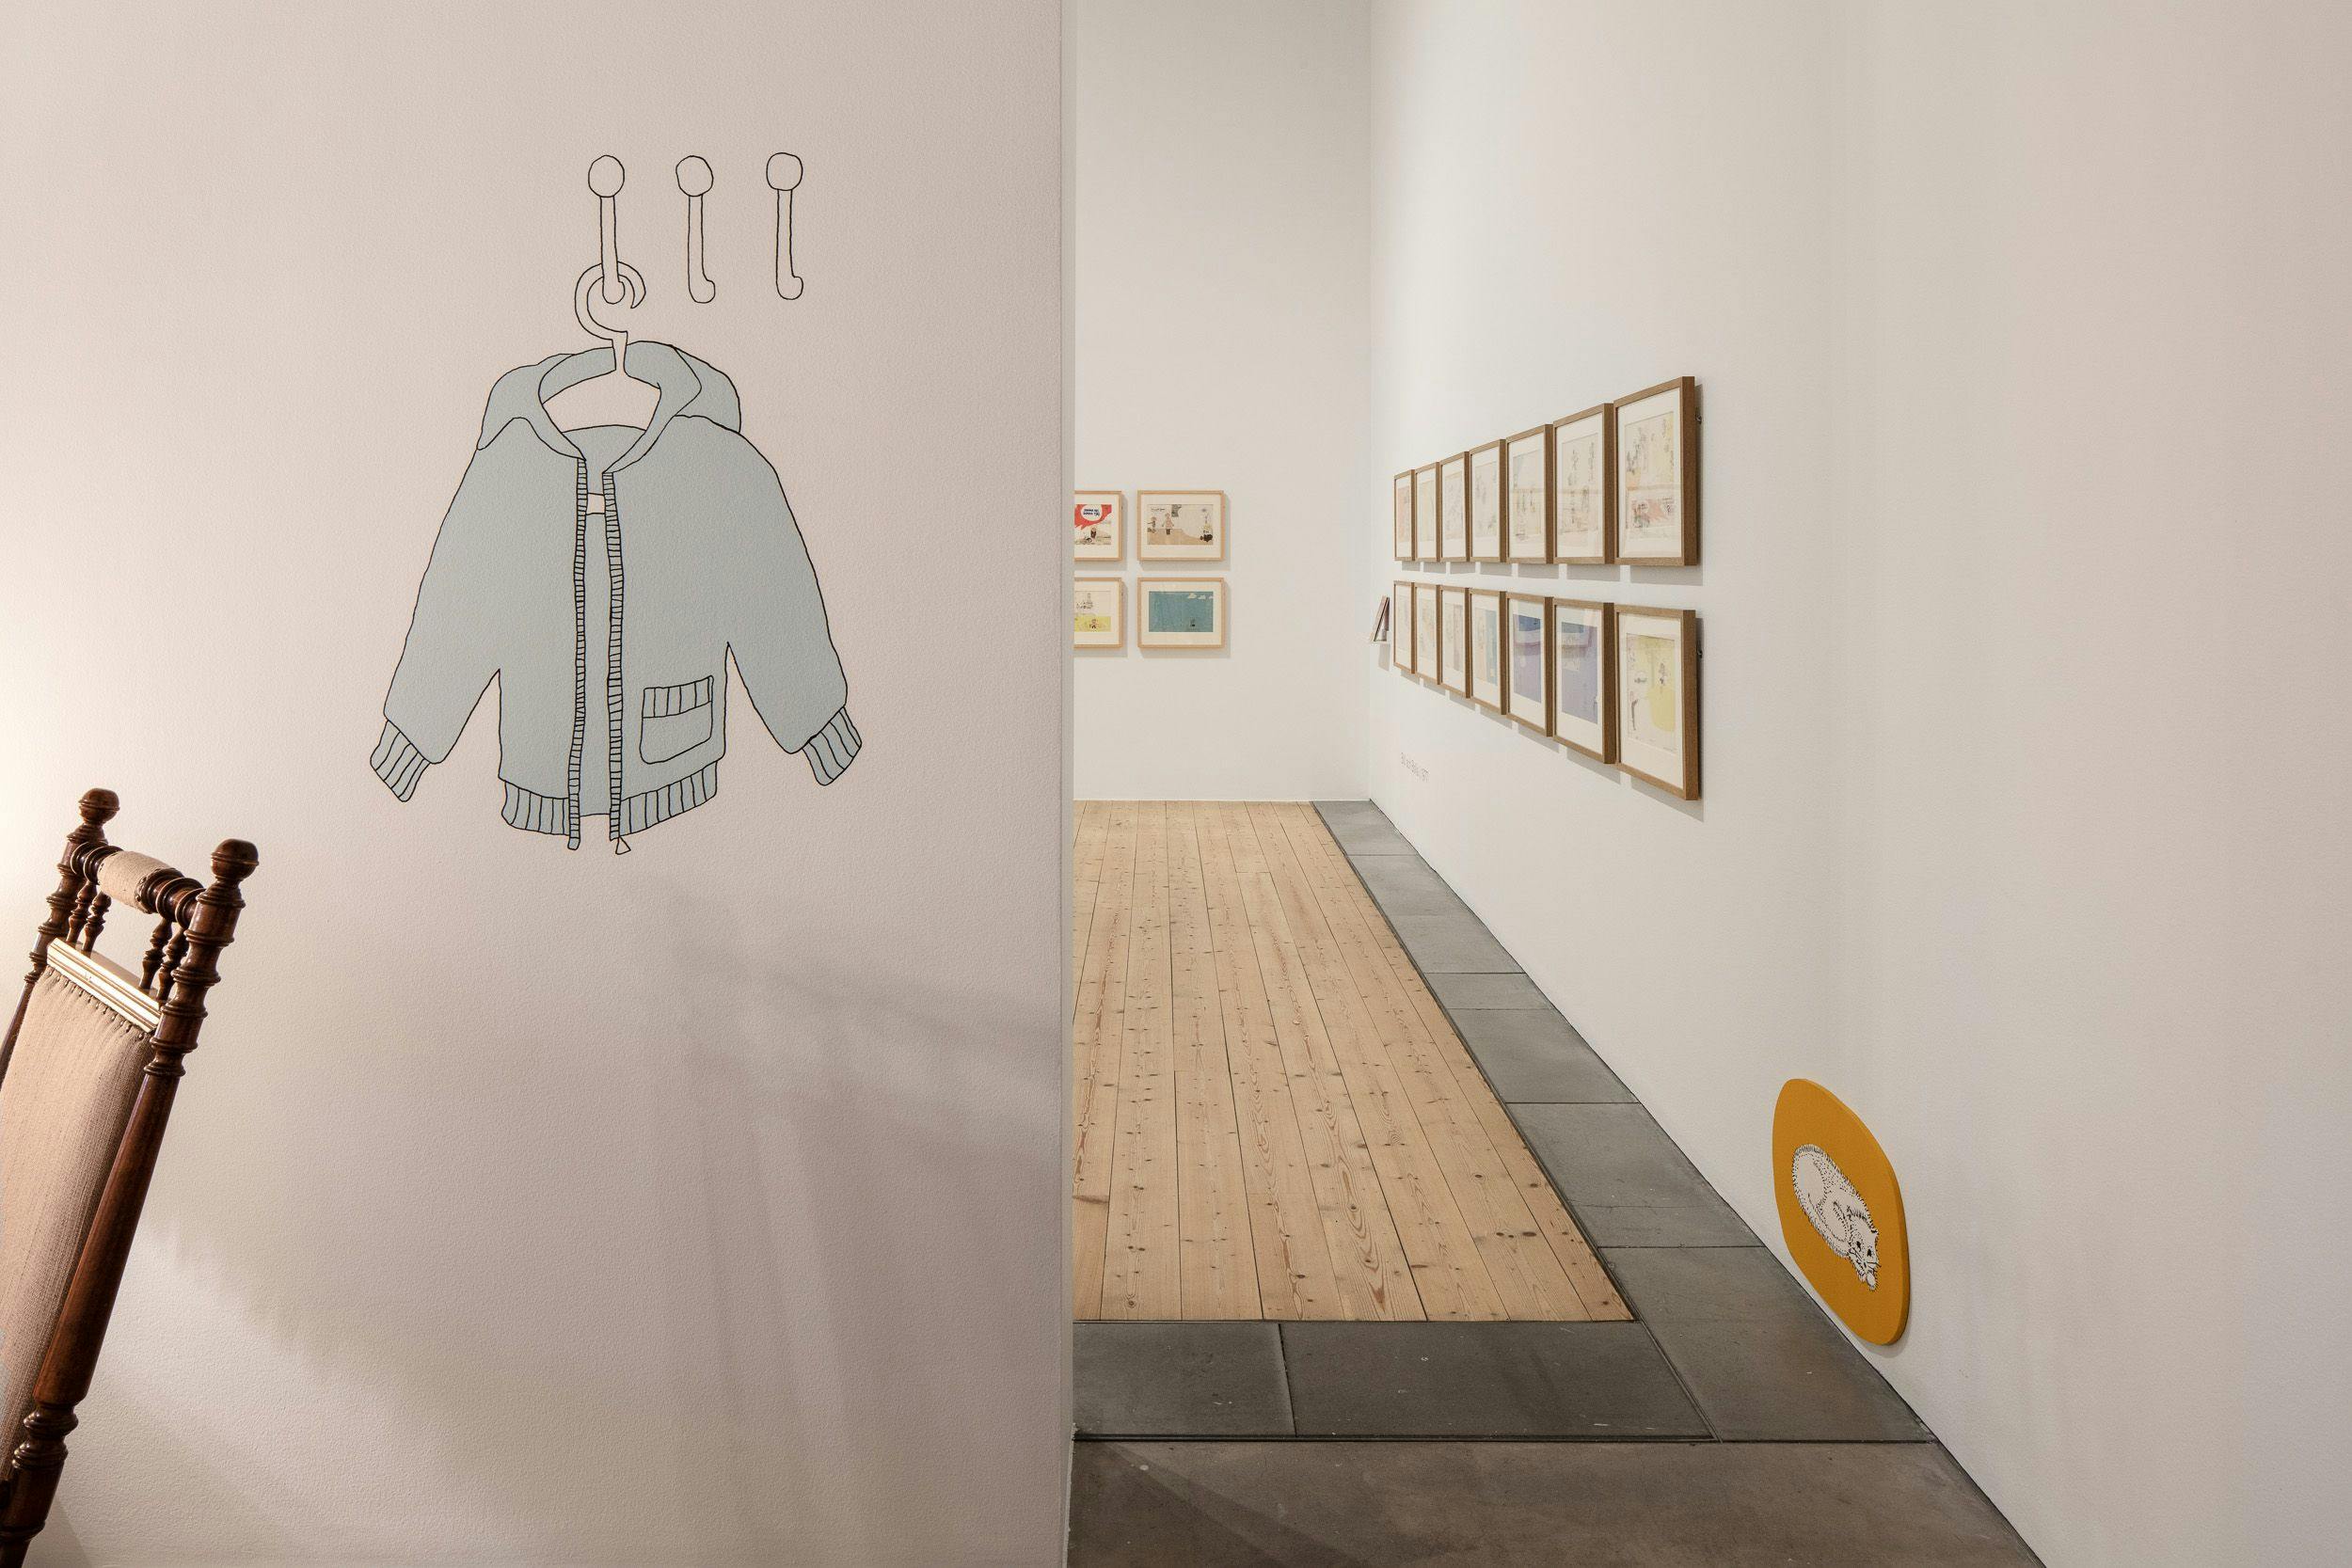 Bild från utställningen 2018, med en målad blå jacka på väggen och tavlor i bakgrunden,